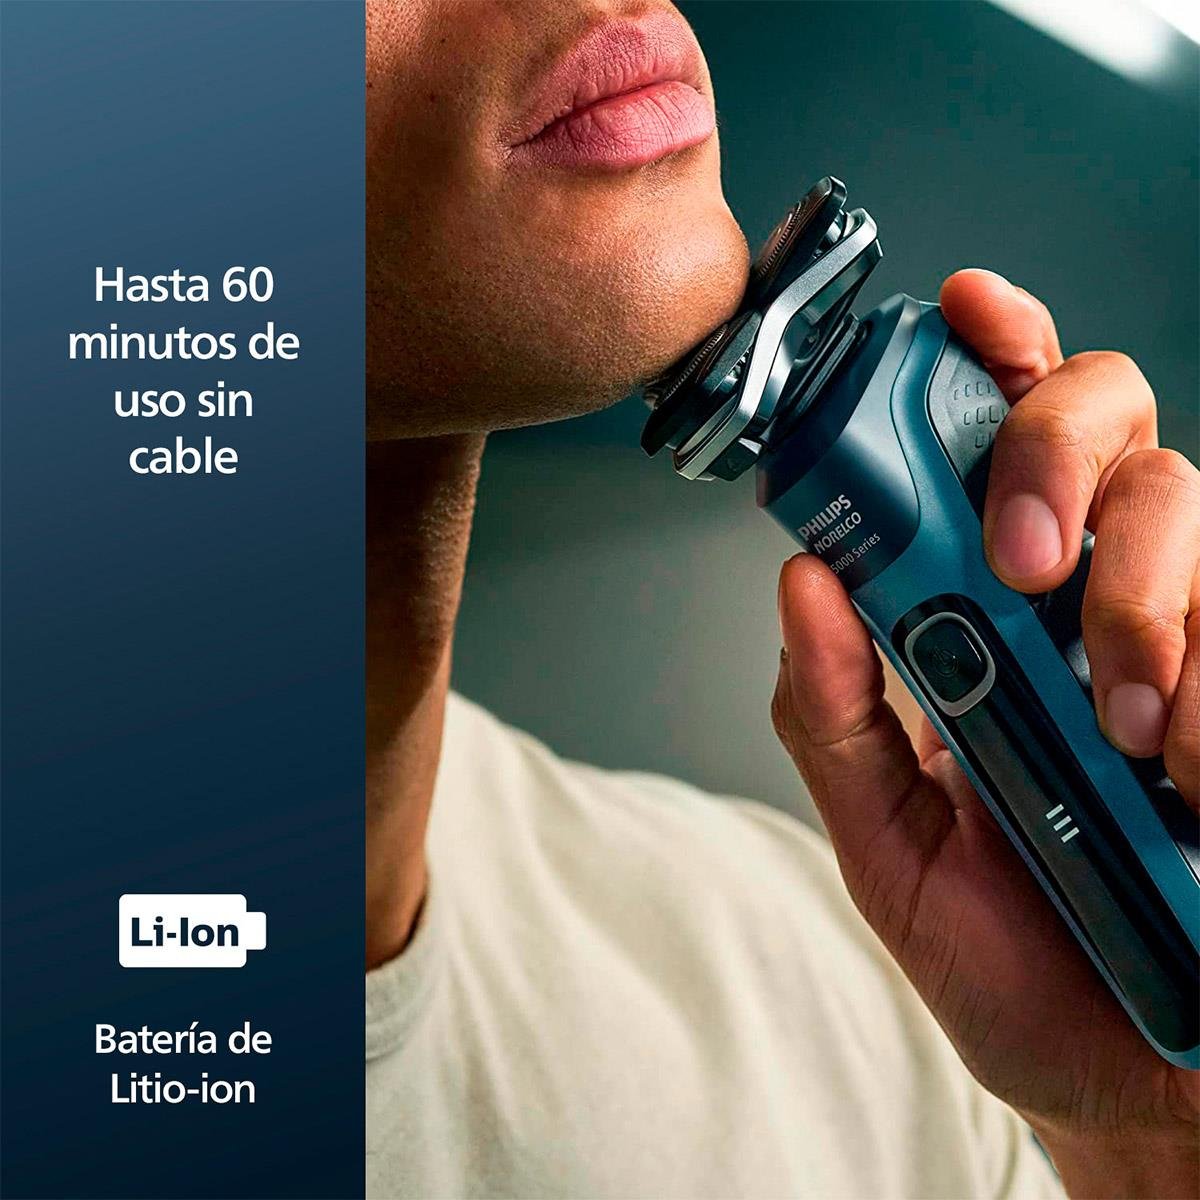 Afeitadora Philips Serie 5000 con tecnología SkinIQ 